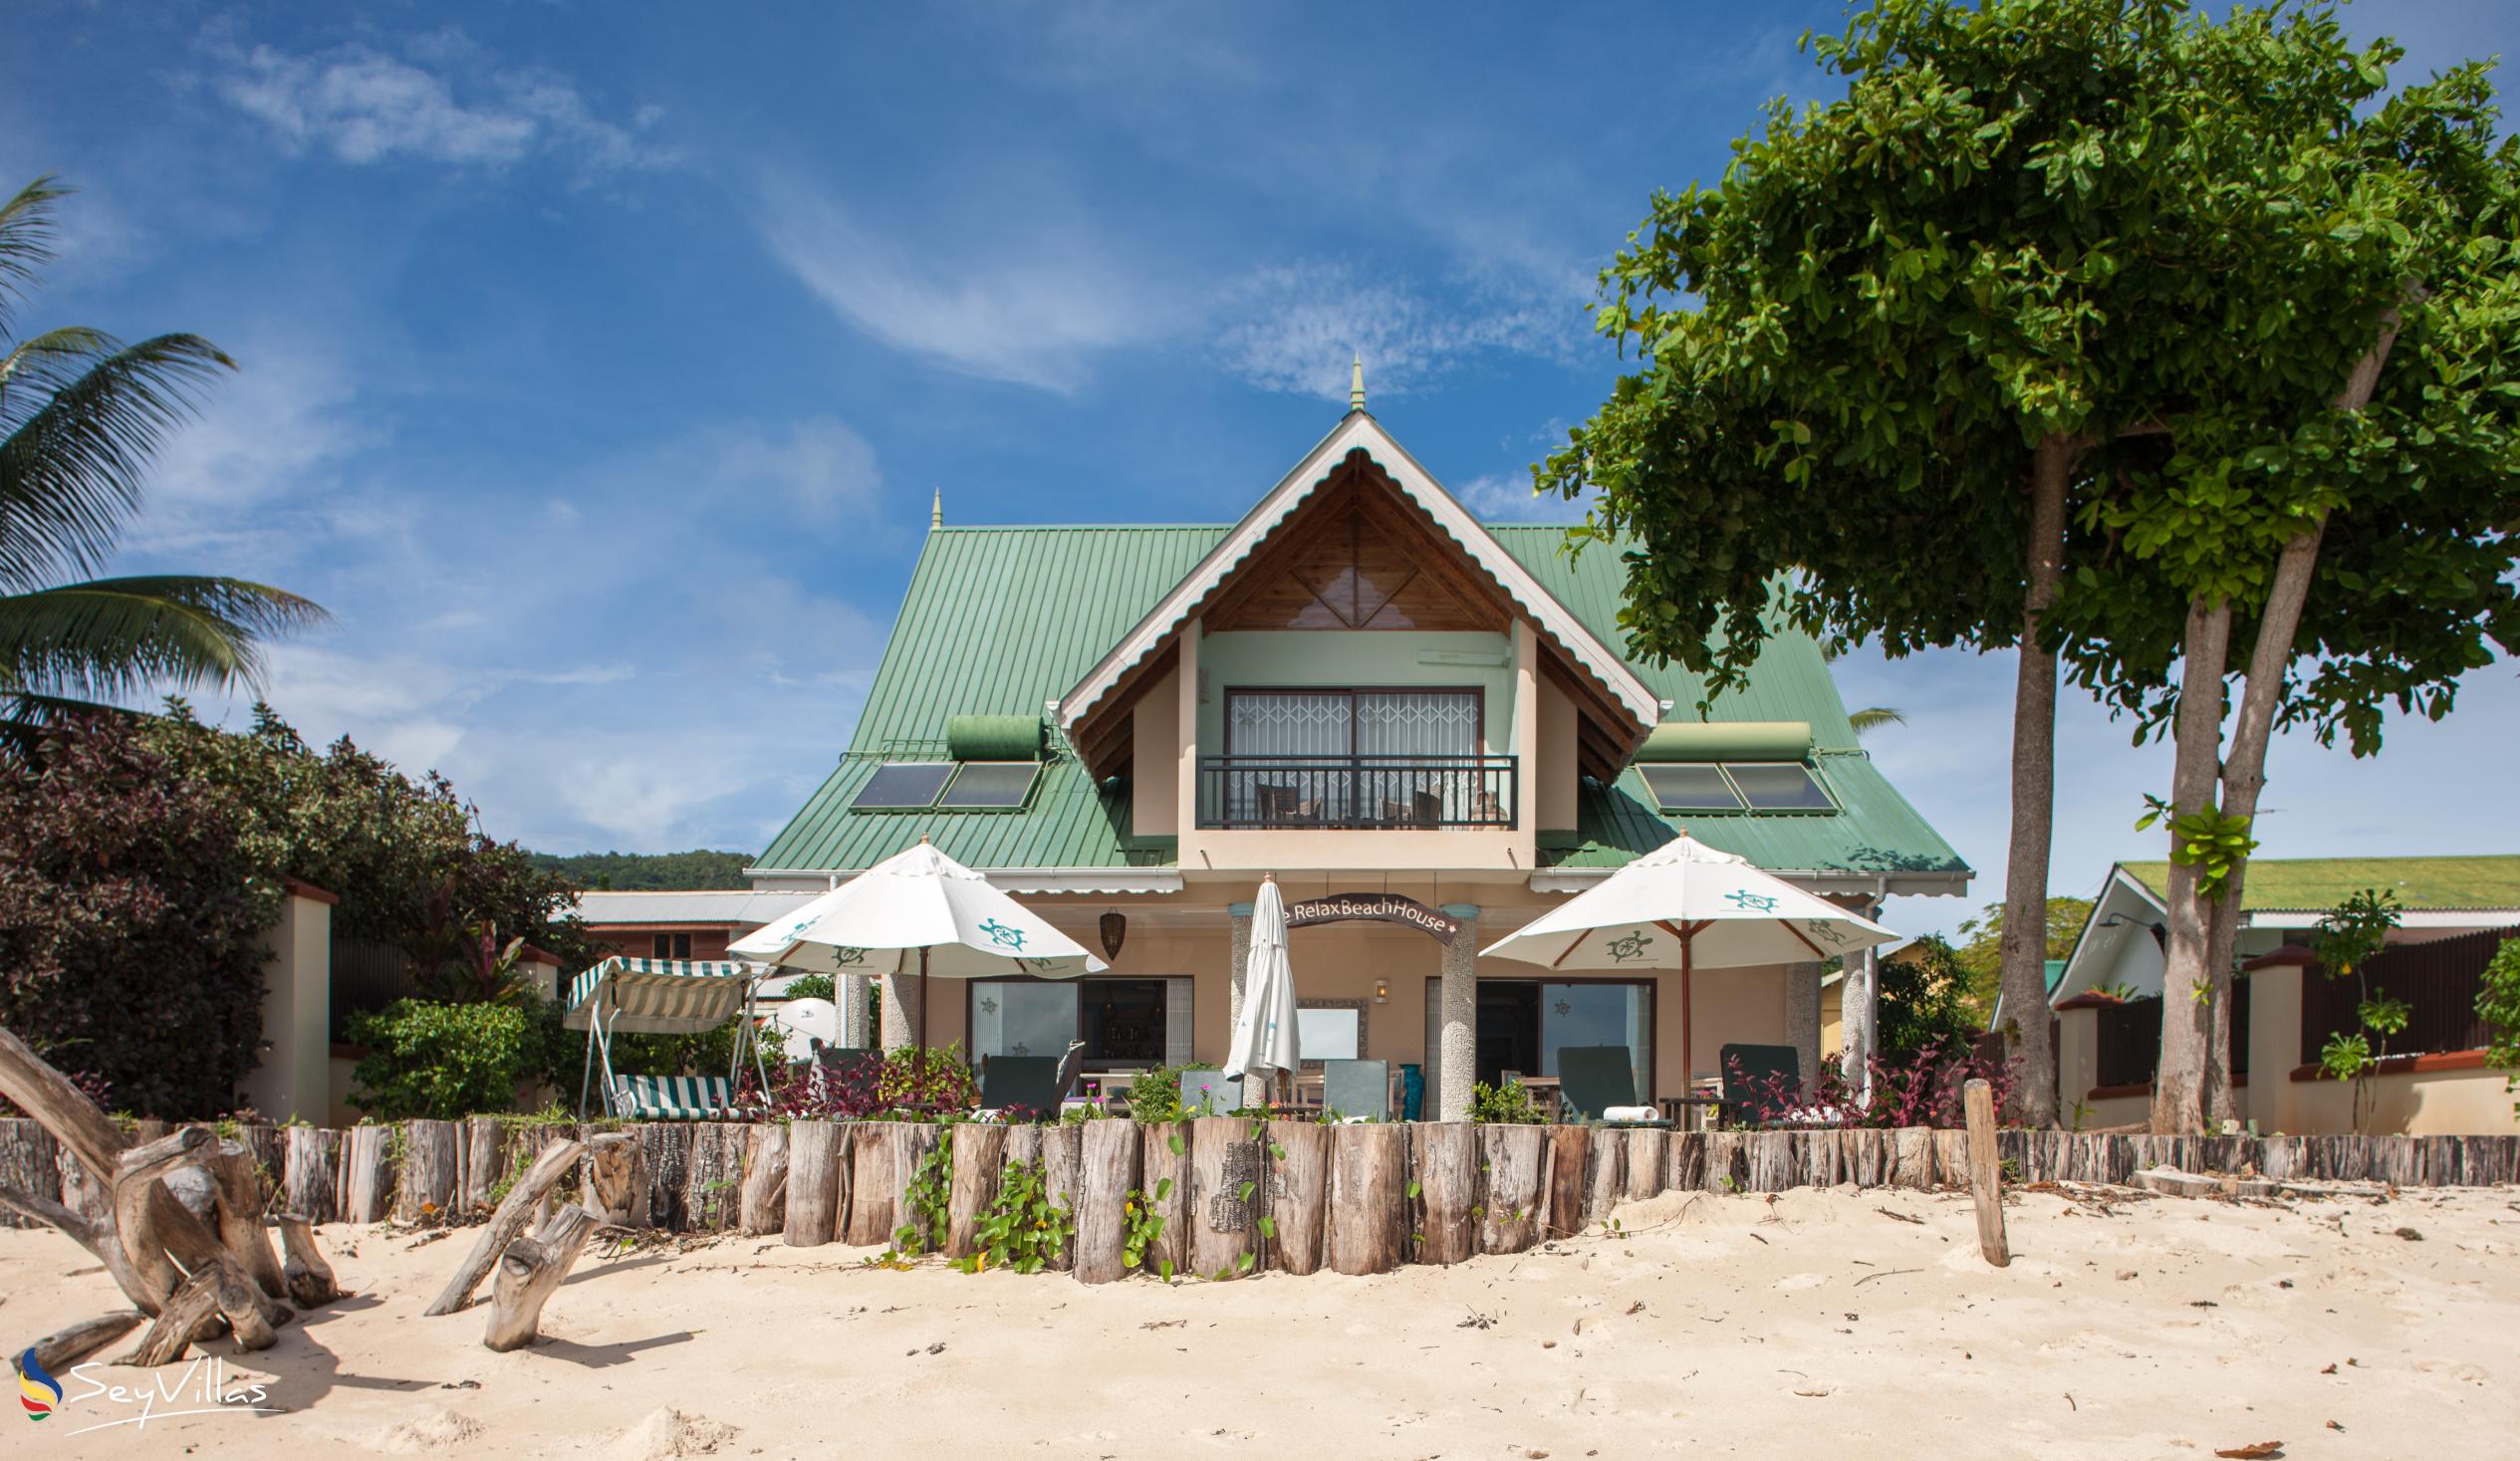 Foto 1: Le Relax Beach House - Aussenbereich - La Digue (Seychellen)